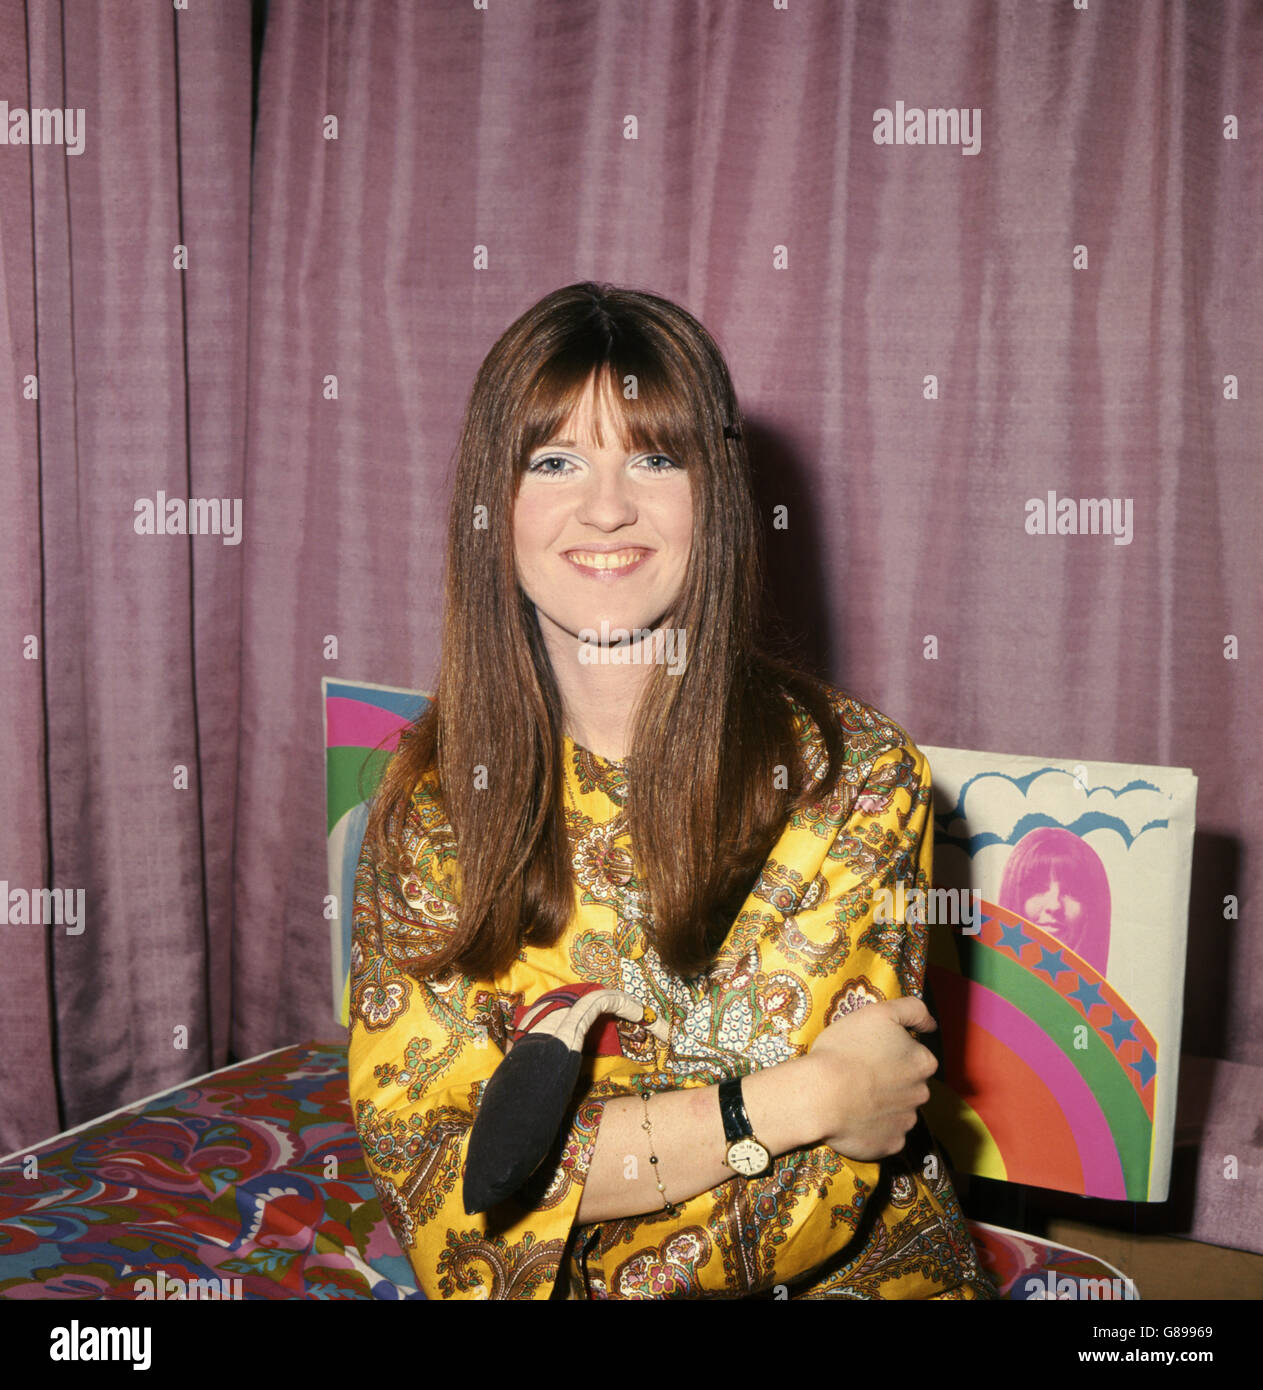 Cathy McGowan, personnalité pop de télévision et designer de mode, photographiée à Londres quand elle a lancé sa dernière entreprise, une collection de divans. On lui a demandé d'aider à concevoir une gamme de lits d'adolescents, et Les voilà. Banque D'Images